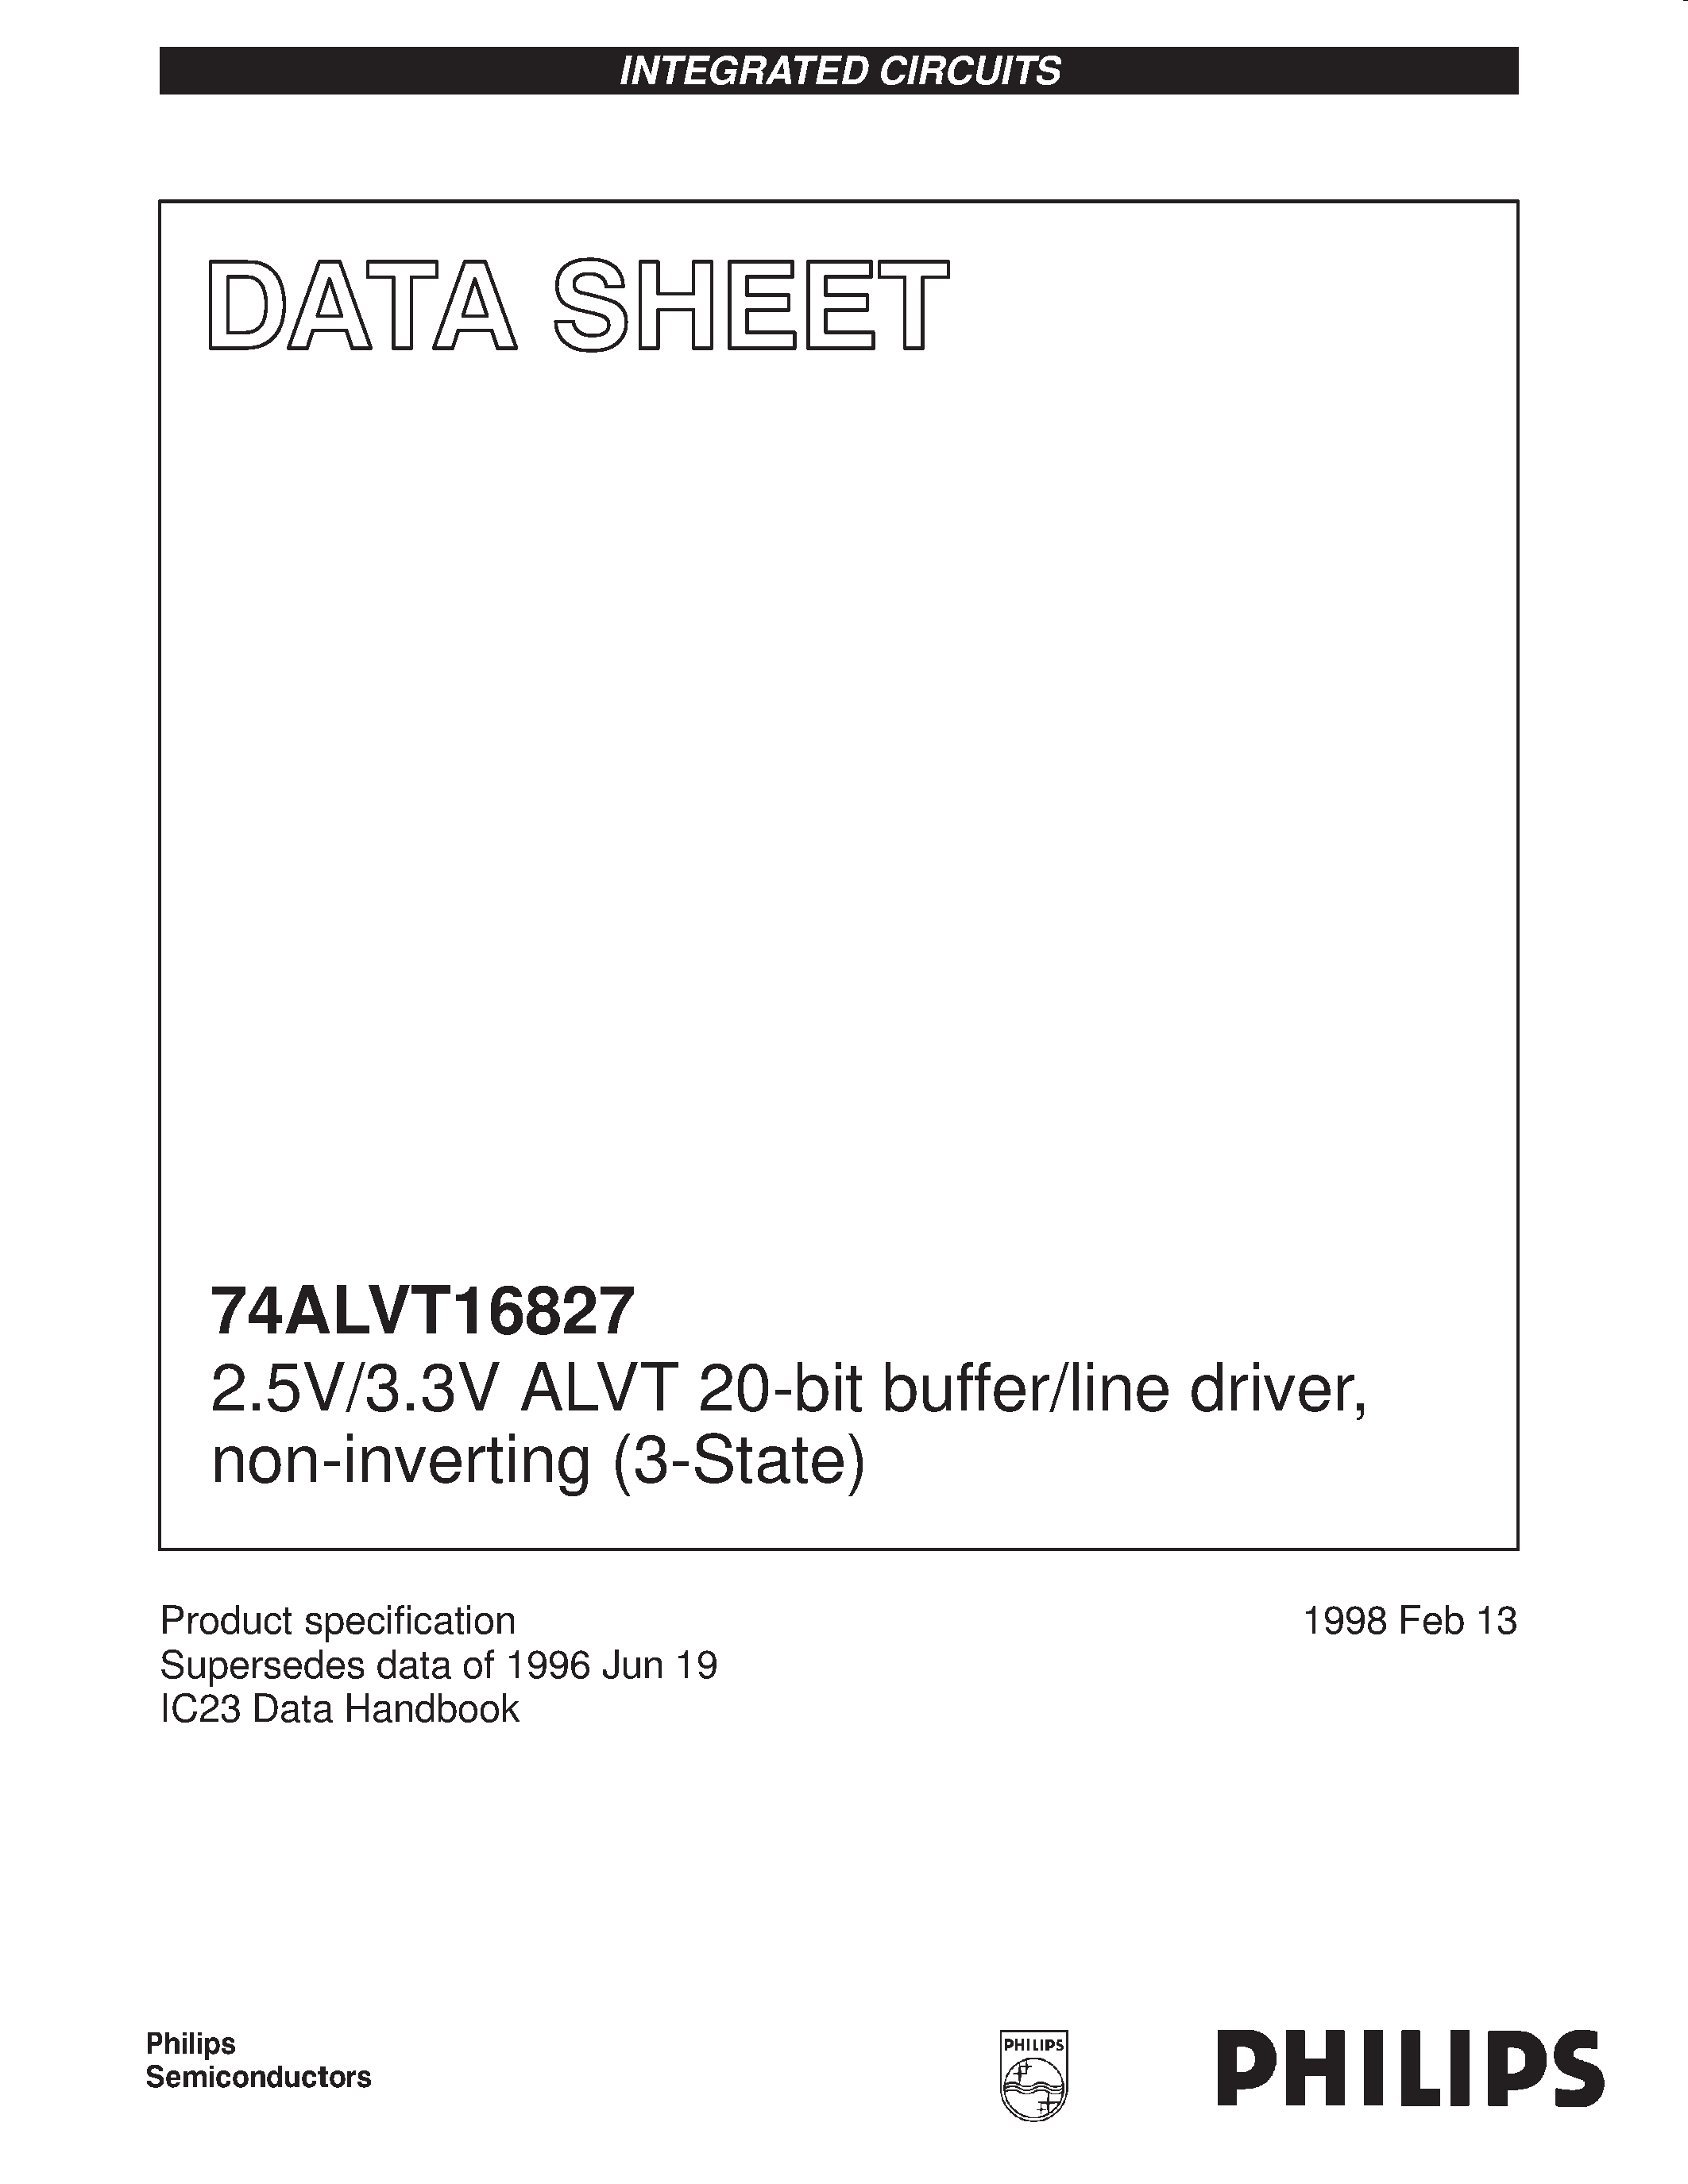 Datasheet 74ALVT16827 - 2.5V/3.3V ALVT 20-bit buffer/line driver/ non-inverting 3-State page 1